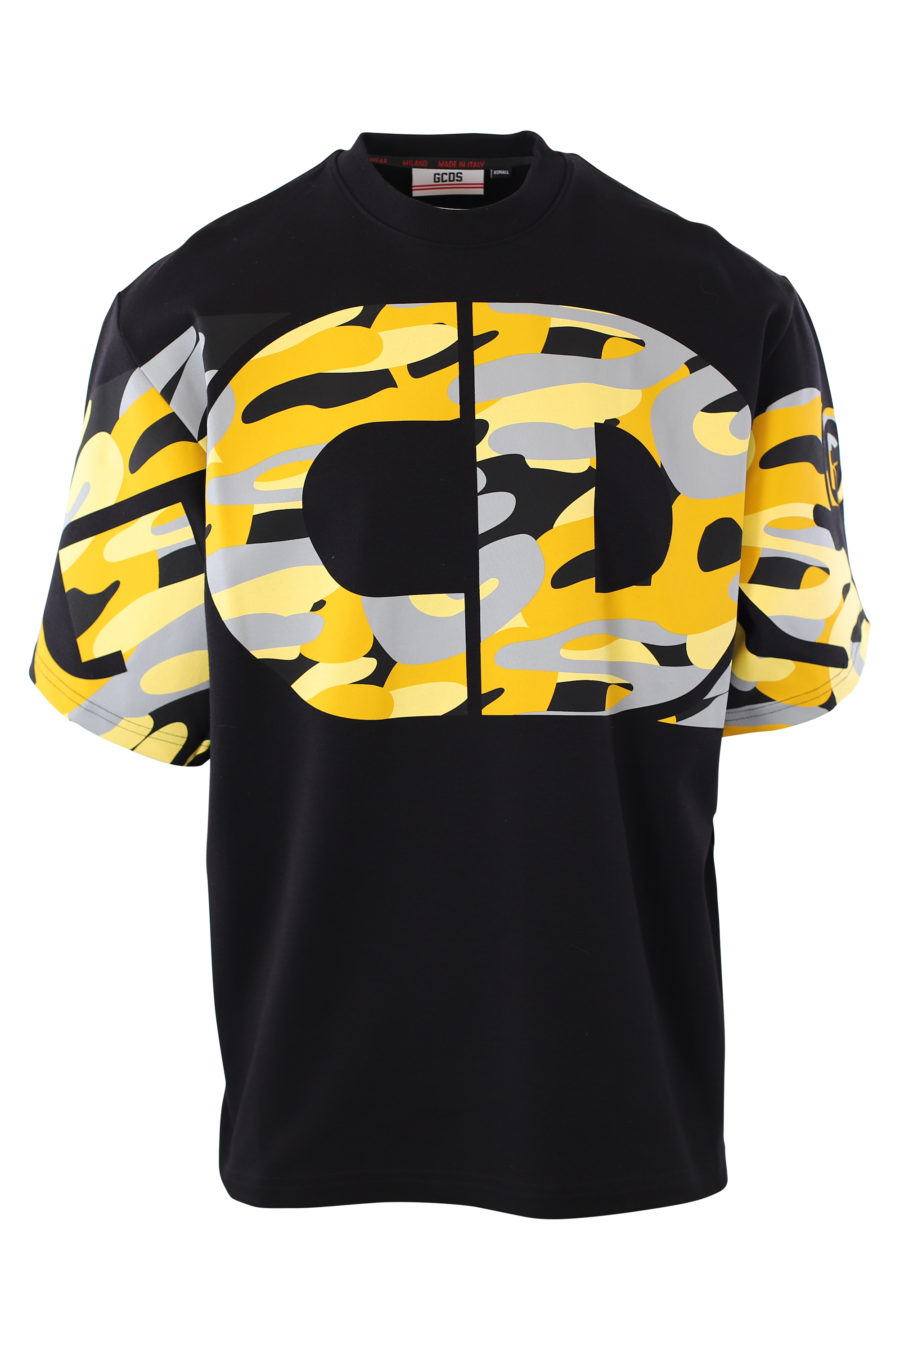 Camiseta negra con logo camuflado amarillo - IMG 2044